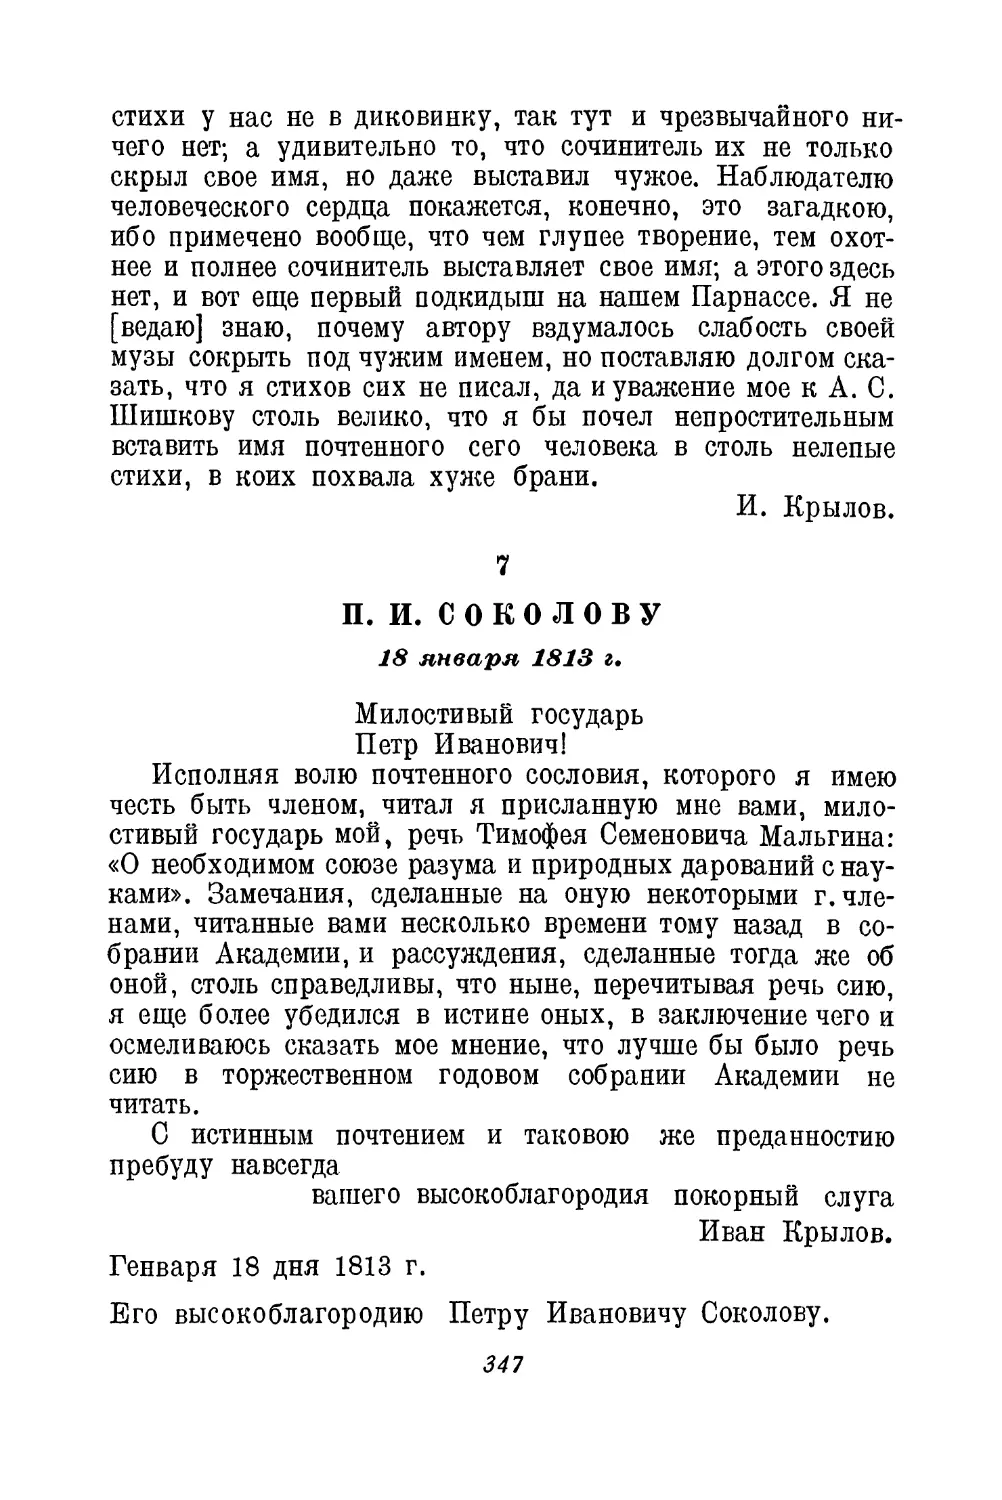 7. П. И. Соколову. 18 января 1813 г.